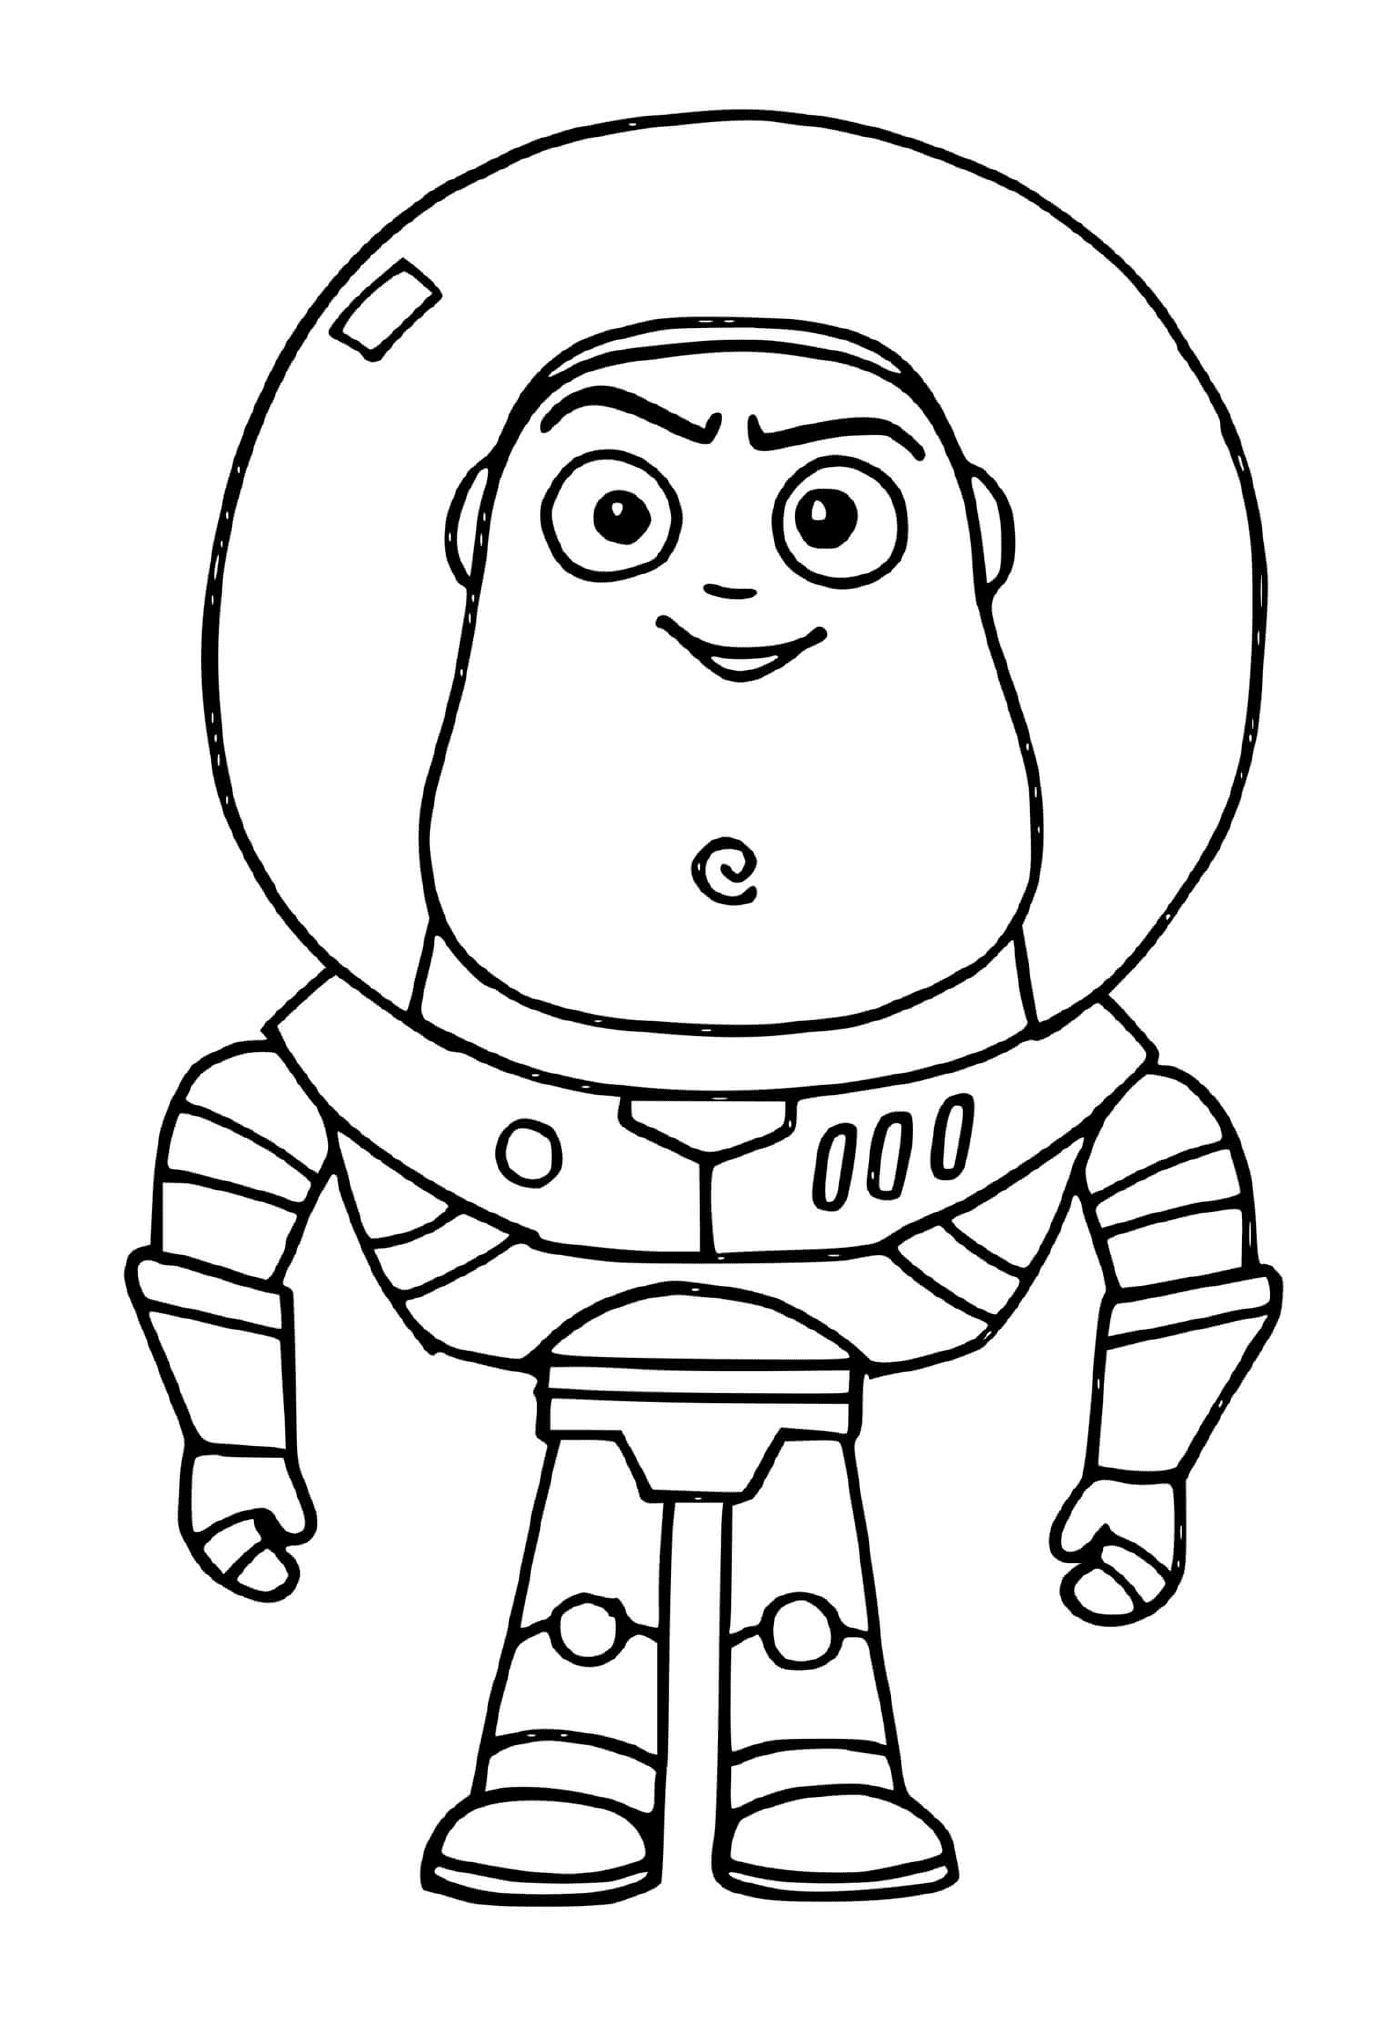  Buzz flash, personaje de la película Toy Story 